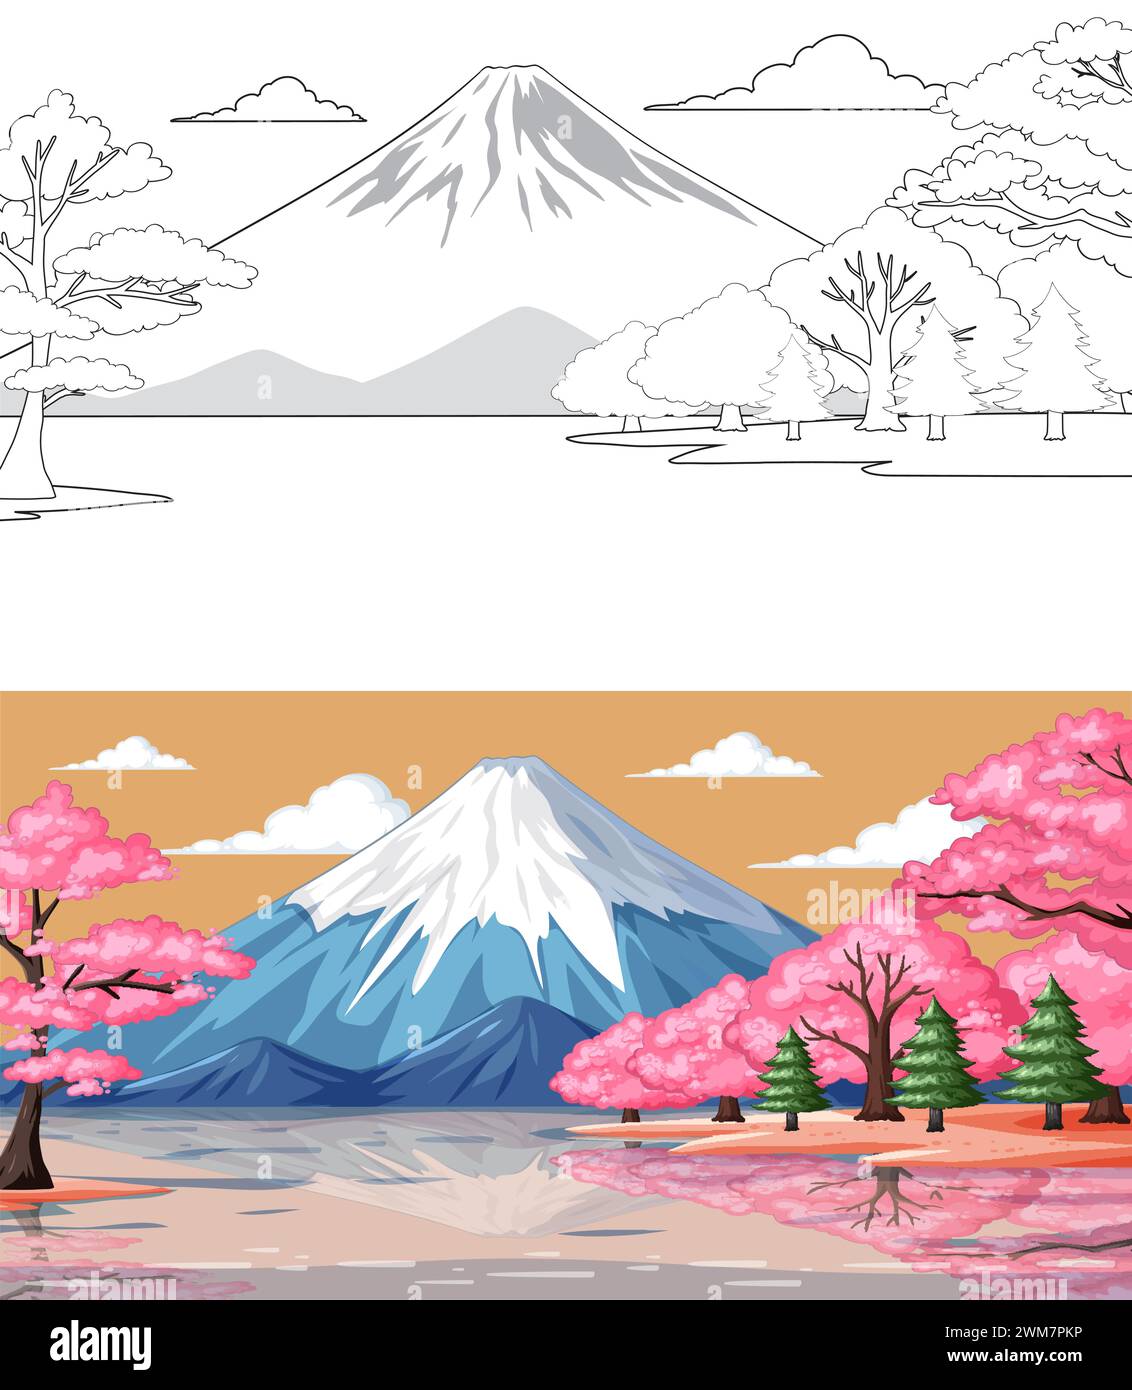 Illustrazione vettoriale di una montagna con alberi in fiore Illustrazione Vettoriale